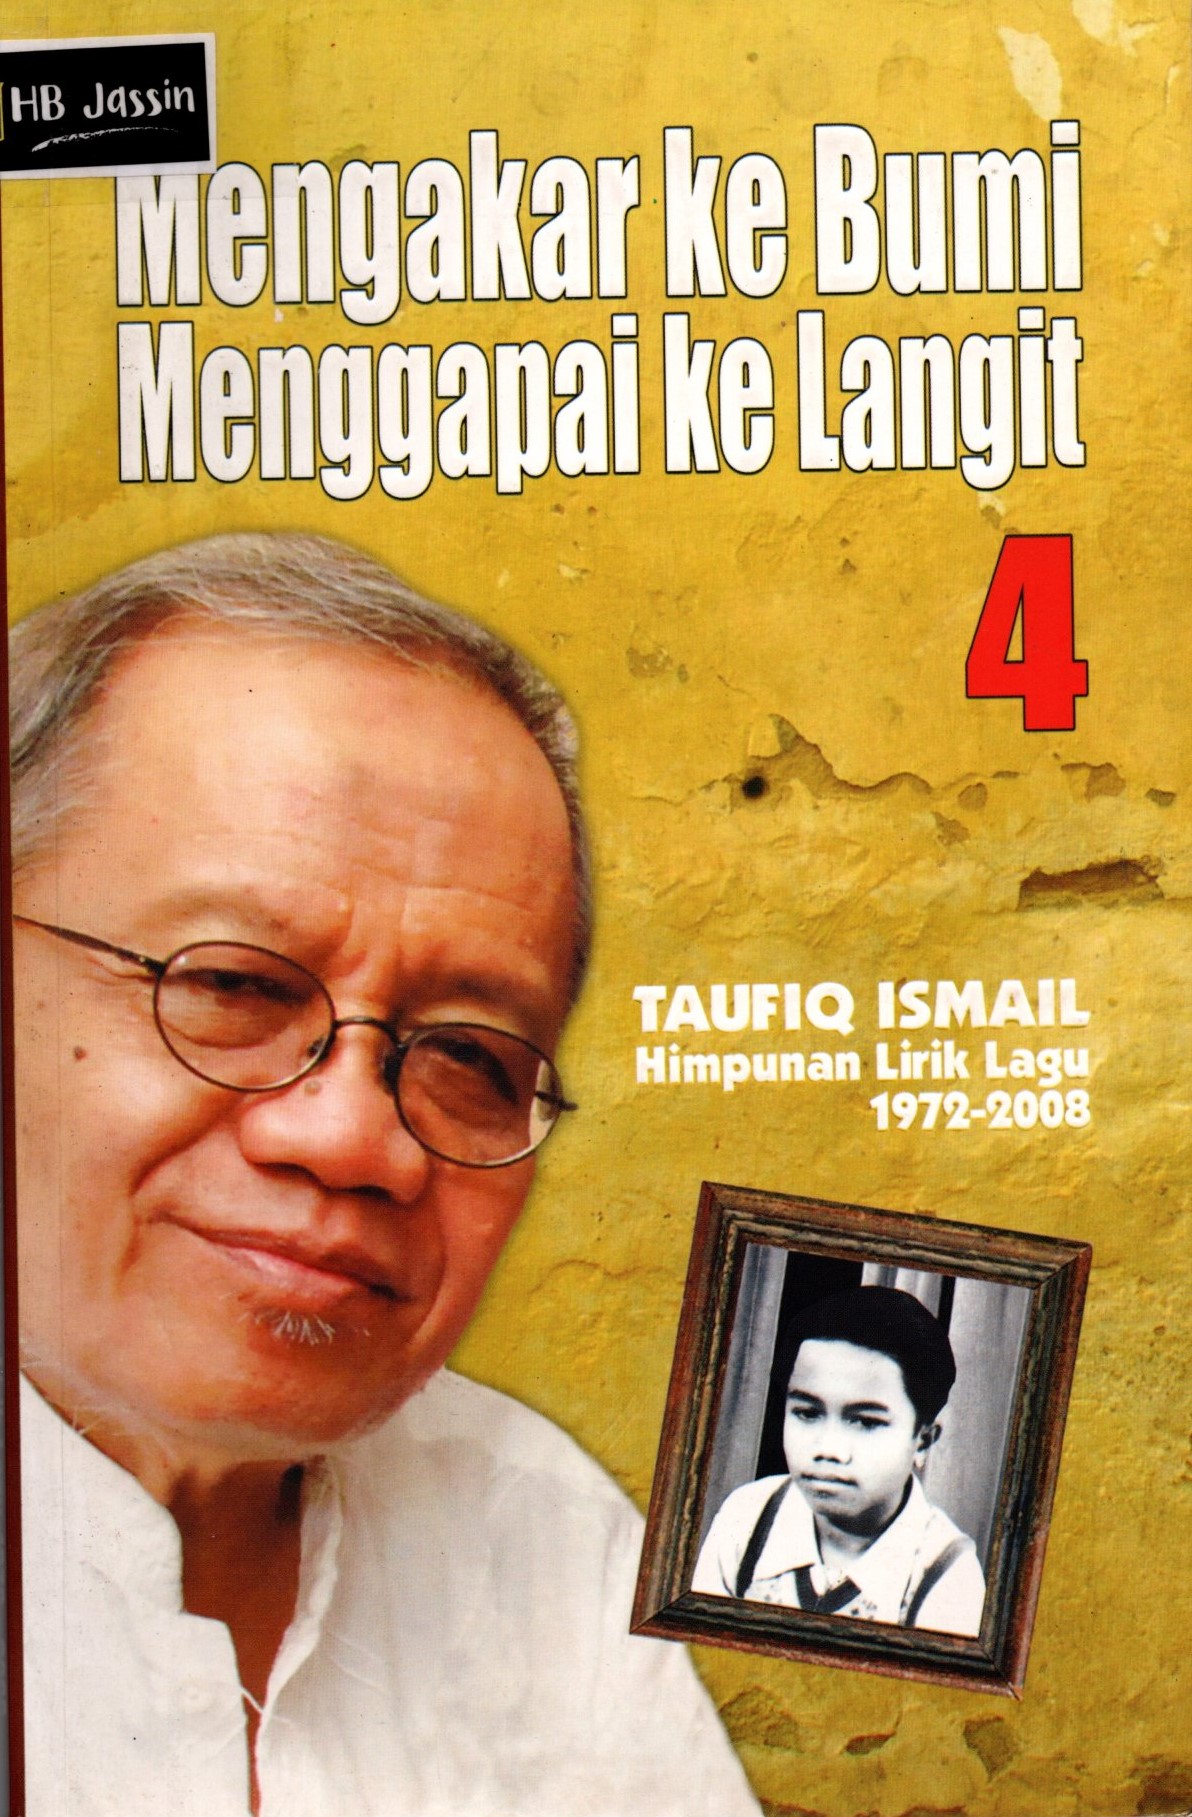 Mengakar ke bumi menggapai ke langit 4 :  Taufiq Ismail himpunan lirik lagu 1972-2008